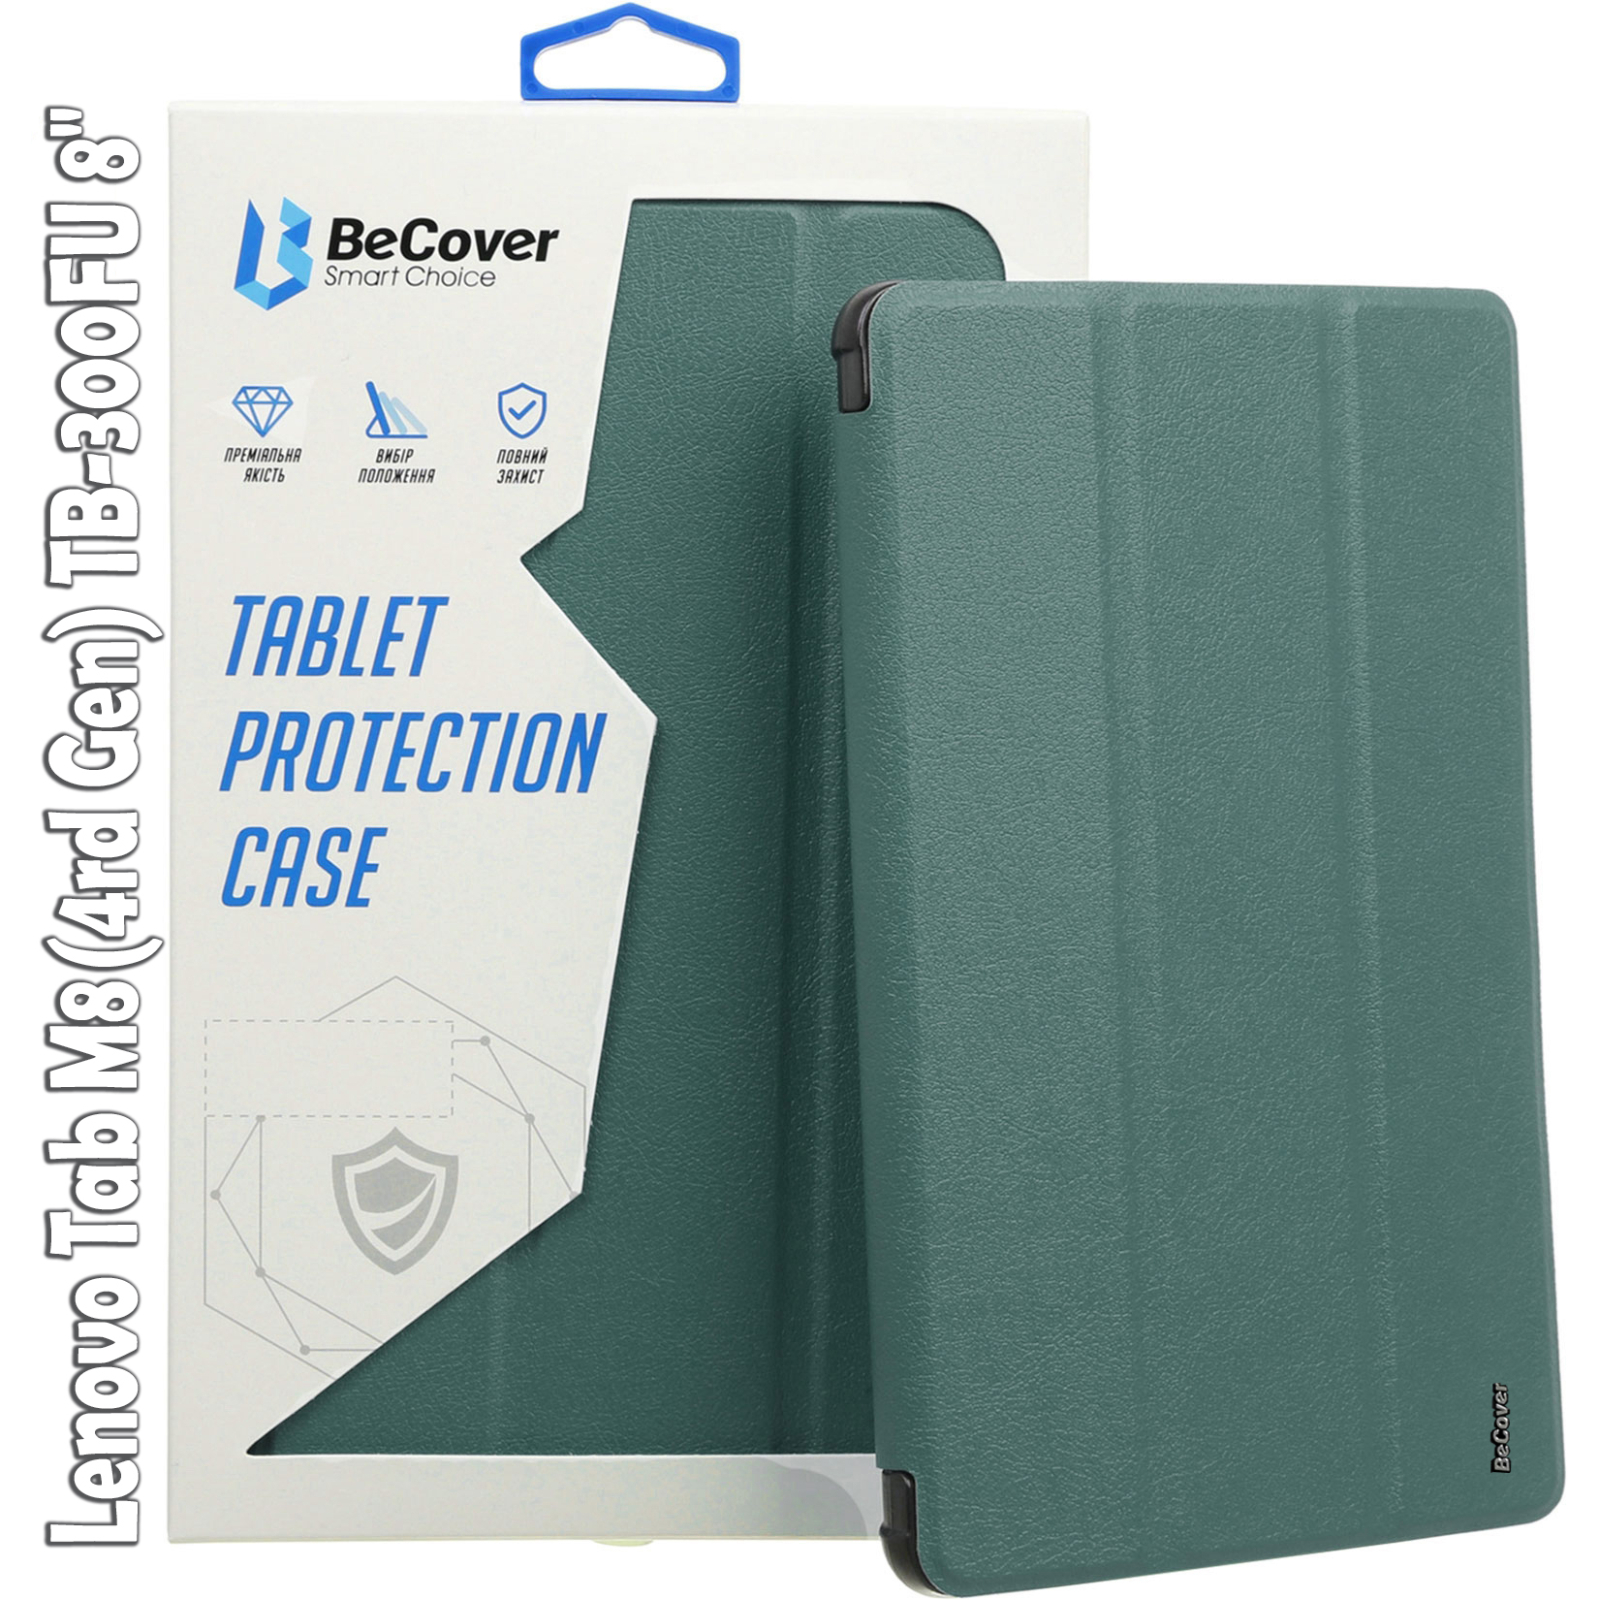 Чехол для планшета BeCover Smart Case Lenovo Tab M8(4rd Gen) TB-300FU 8" Red (709213)